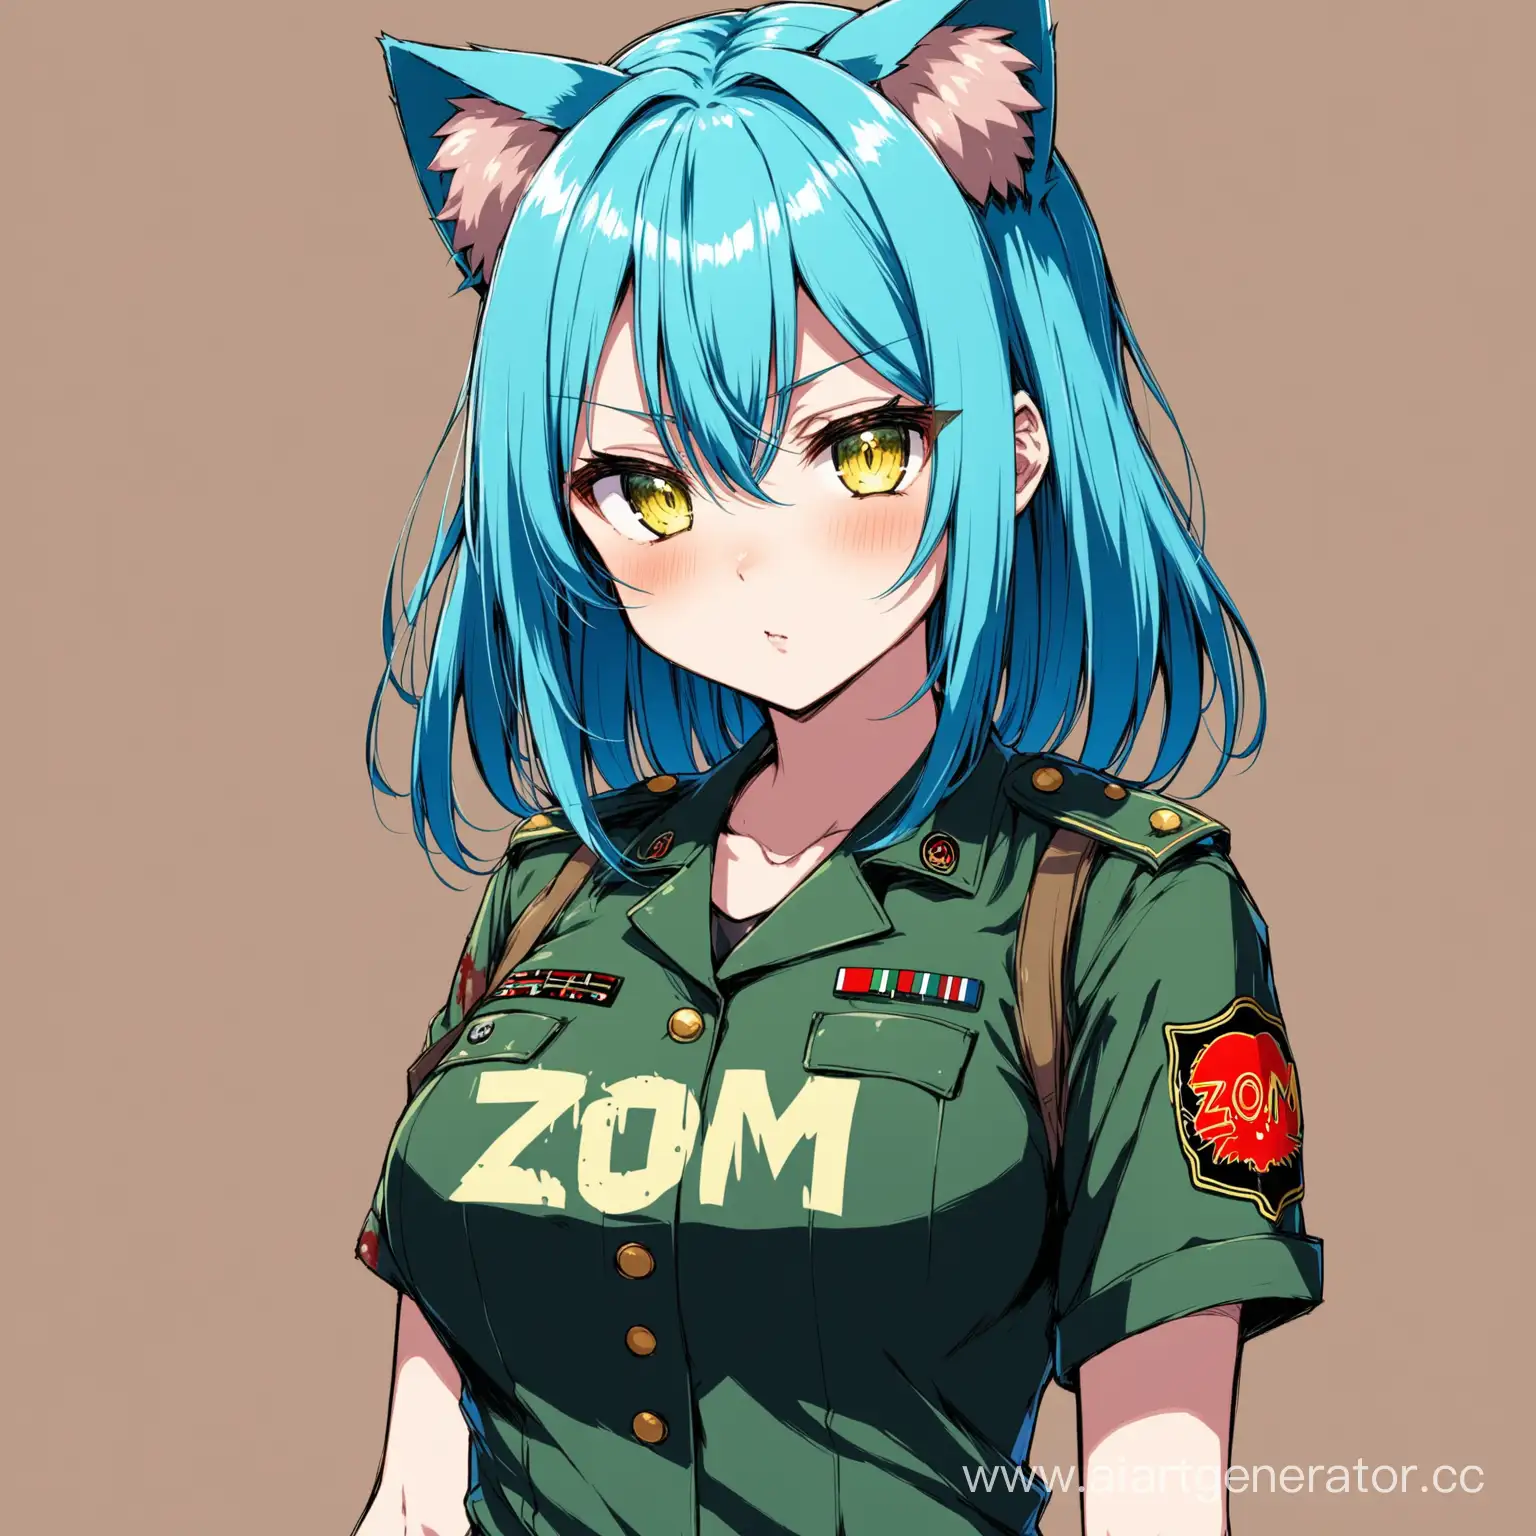 Аниме девушка с кошачьими ушками,голубыми волосами на майке у неё написано ZOM в военной форме